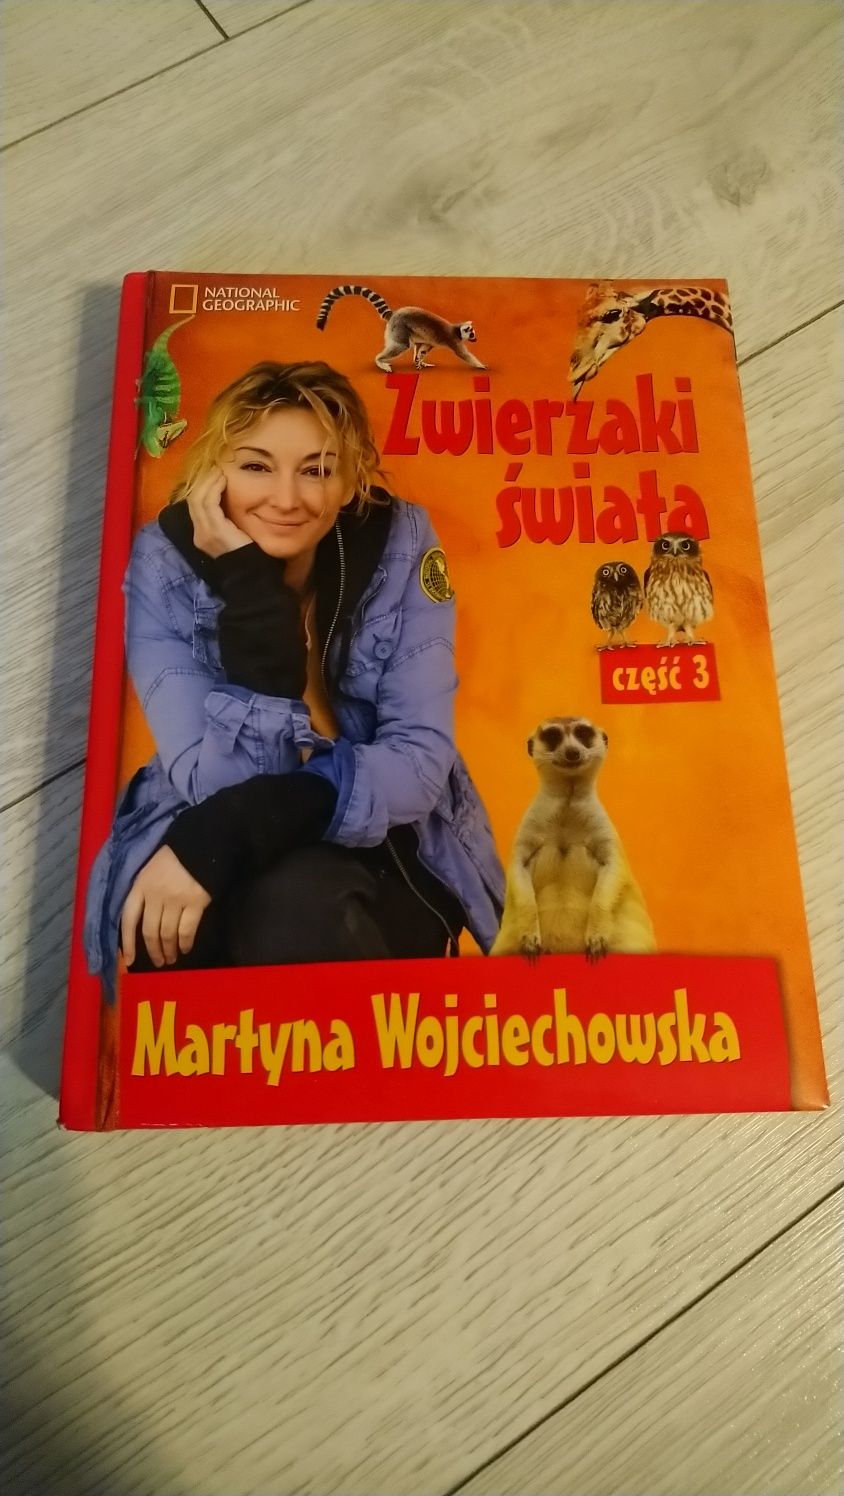 Zwierzaki świata cześć 3 Martyna Wojciechowska